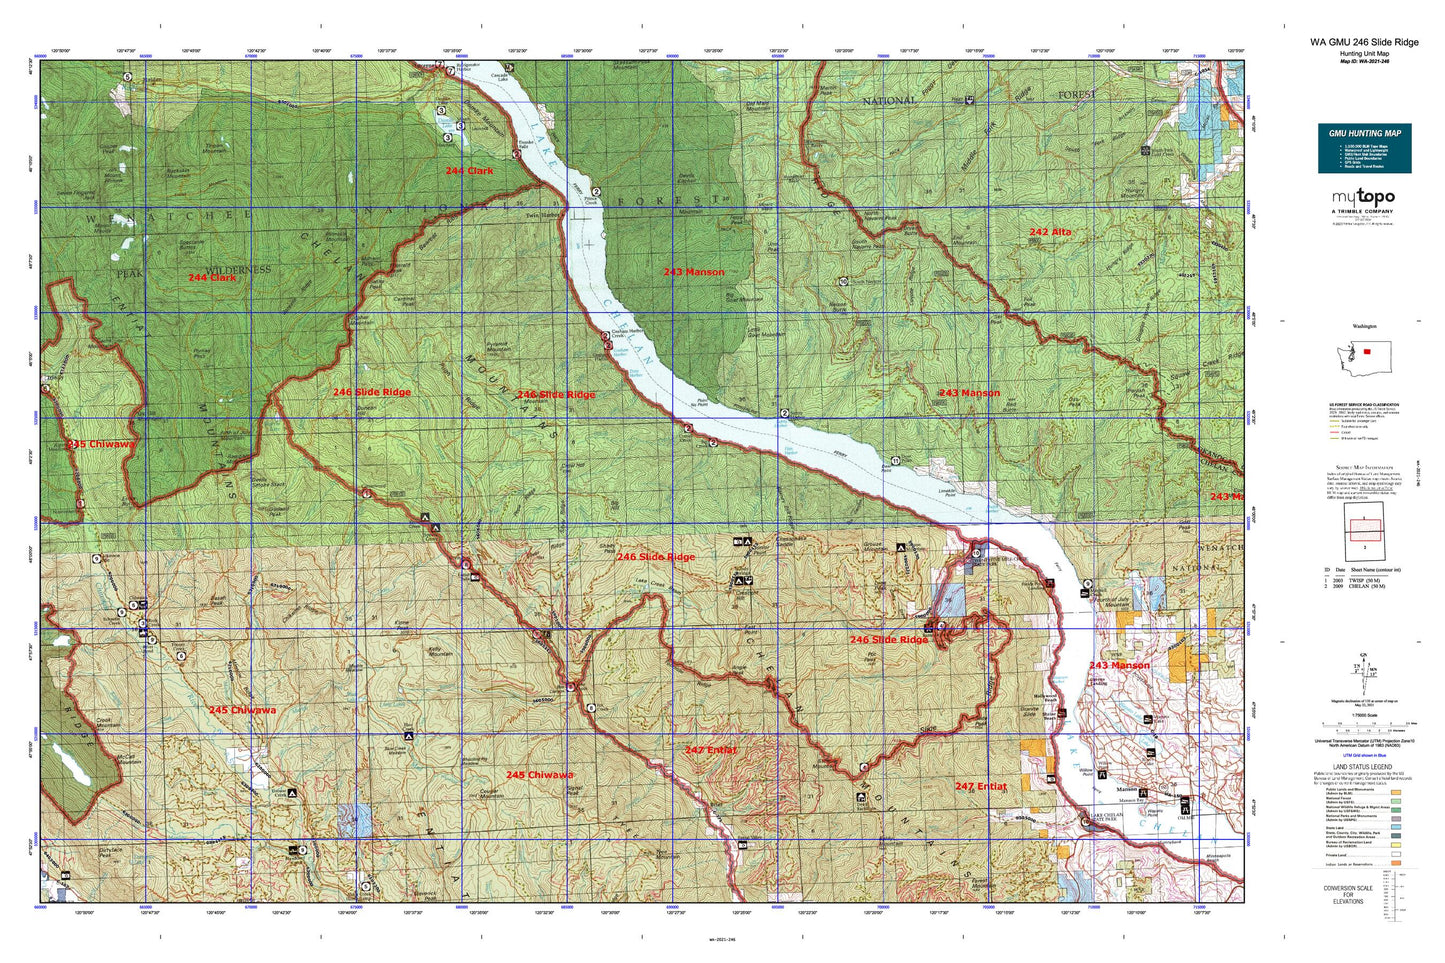 Washington GMU 246 Slide Ridge Map Image